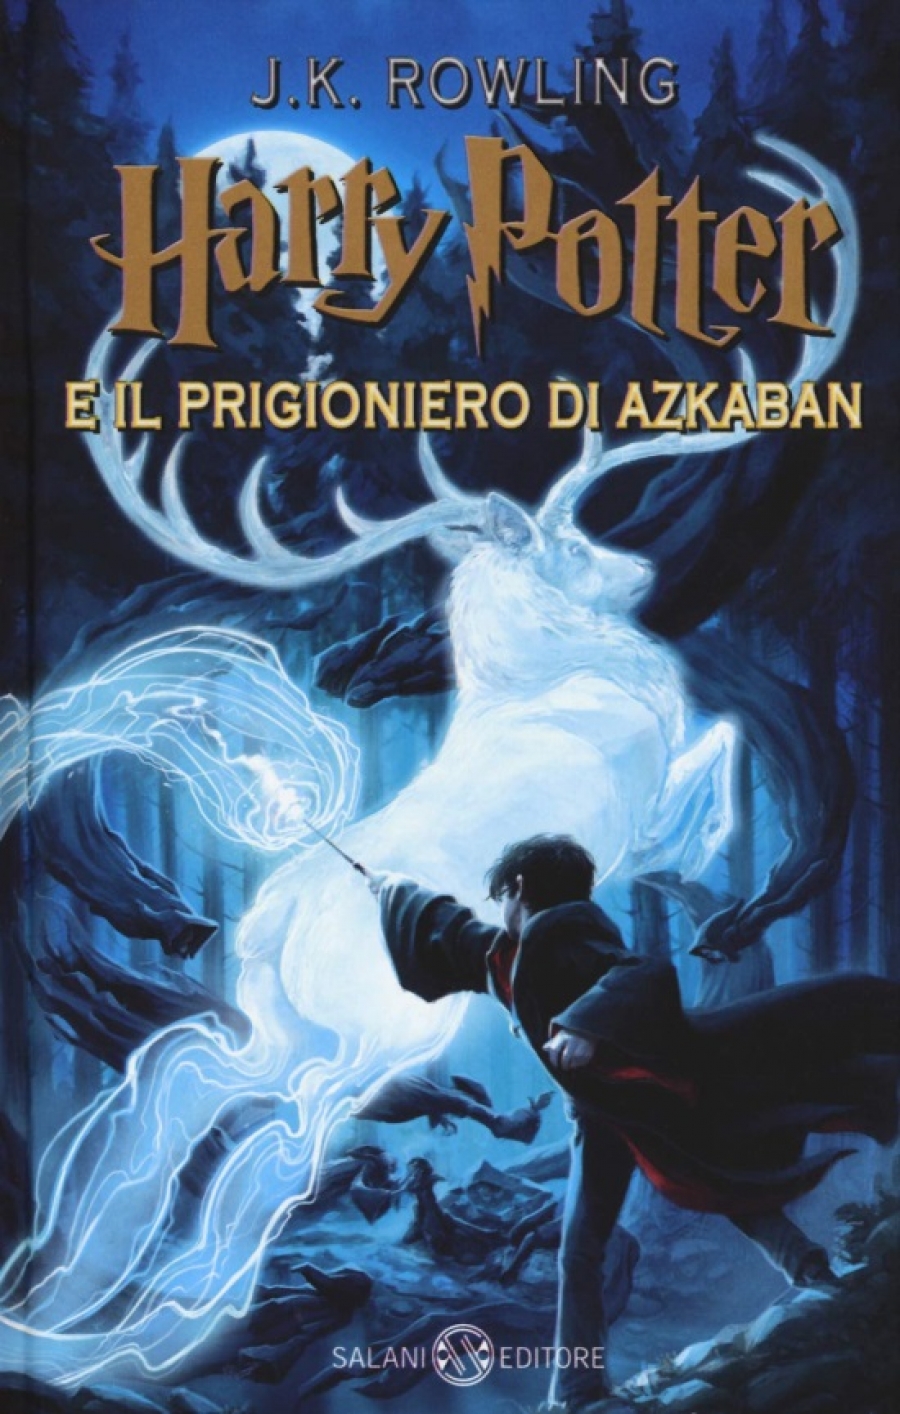 Rowling J.K. Harry Potter e il prigioniero di Azkaban: 3 